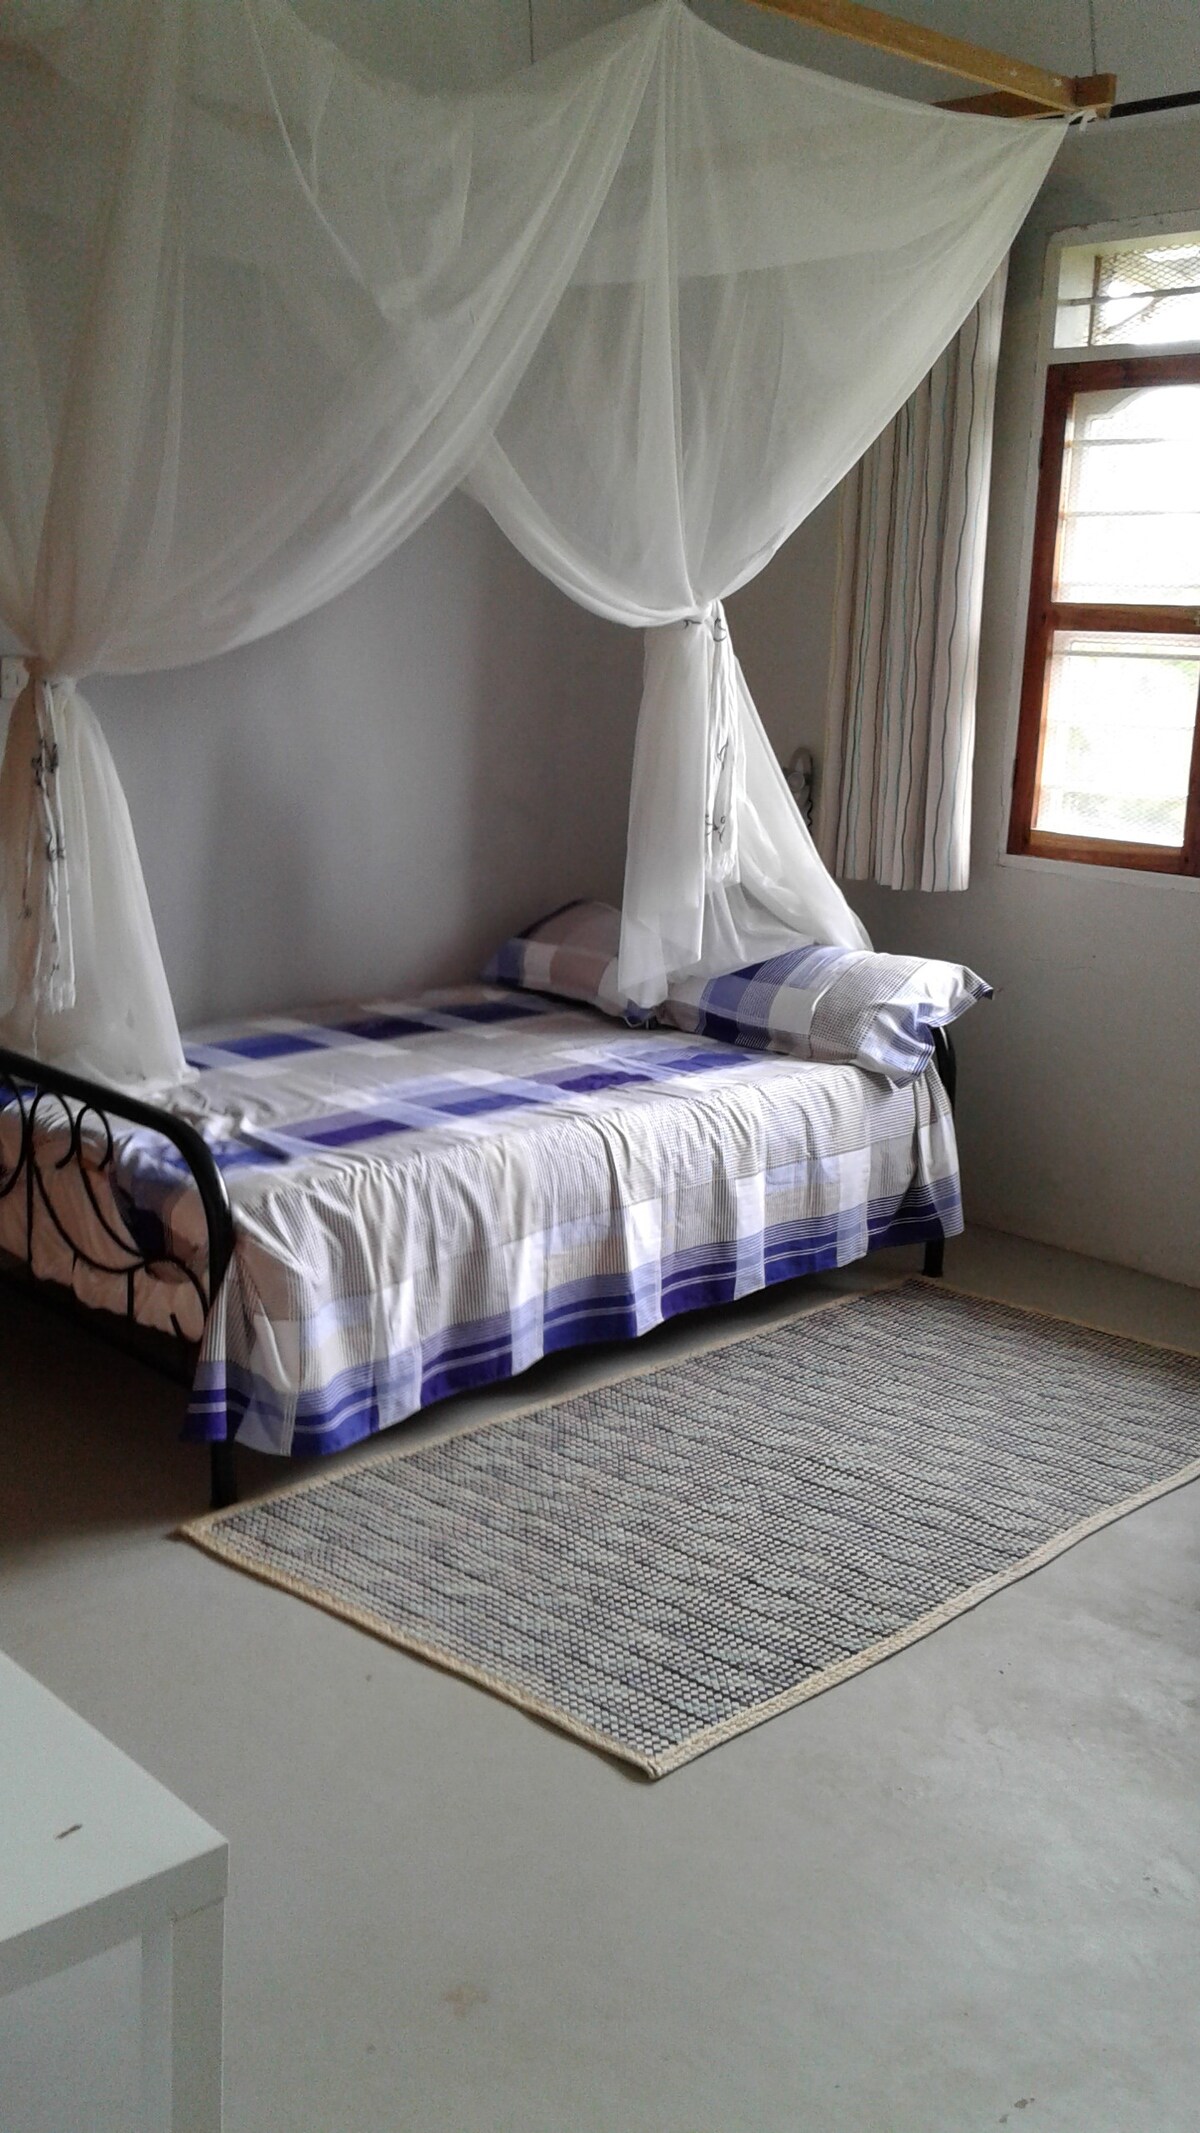 NyumbaniBB, Bukoba, Tanzania: Room Ti